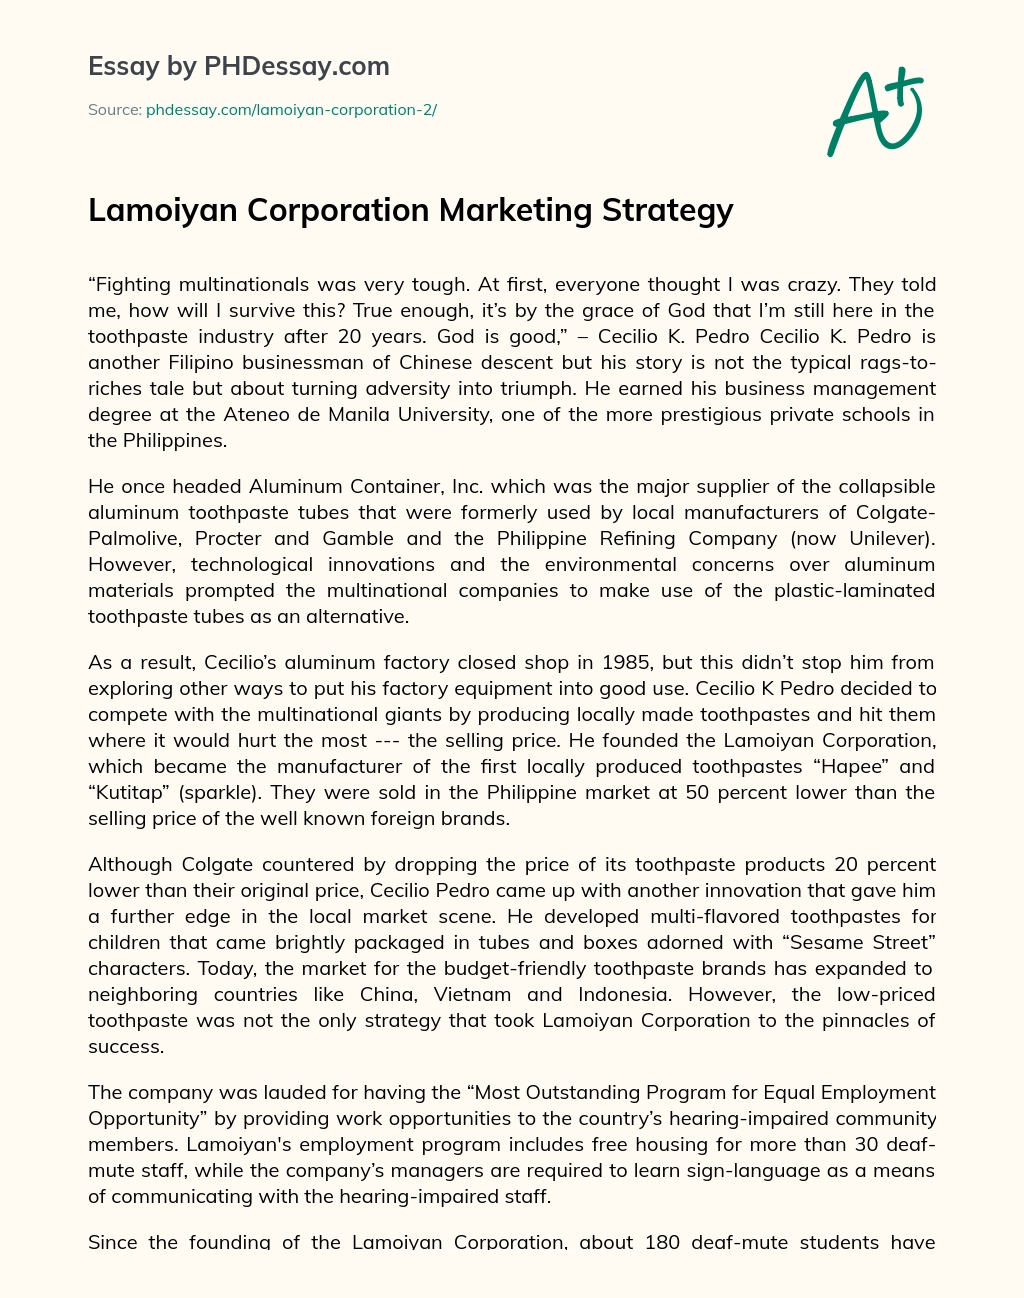 Lamoiyan Corporation Marketing Strategy essay